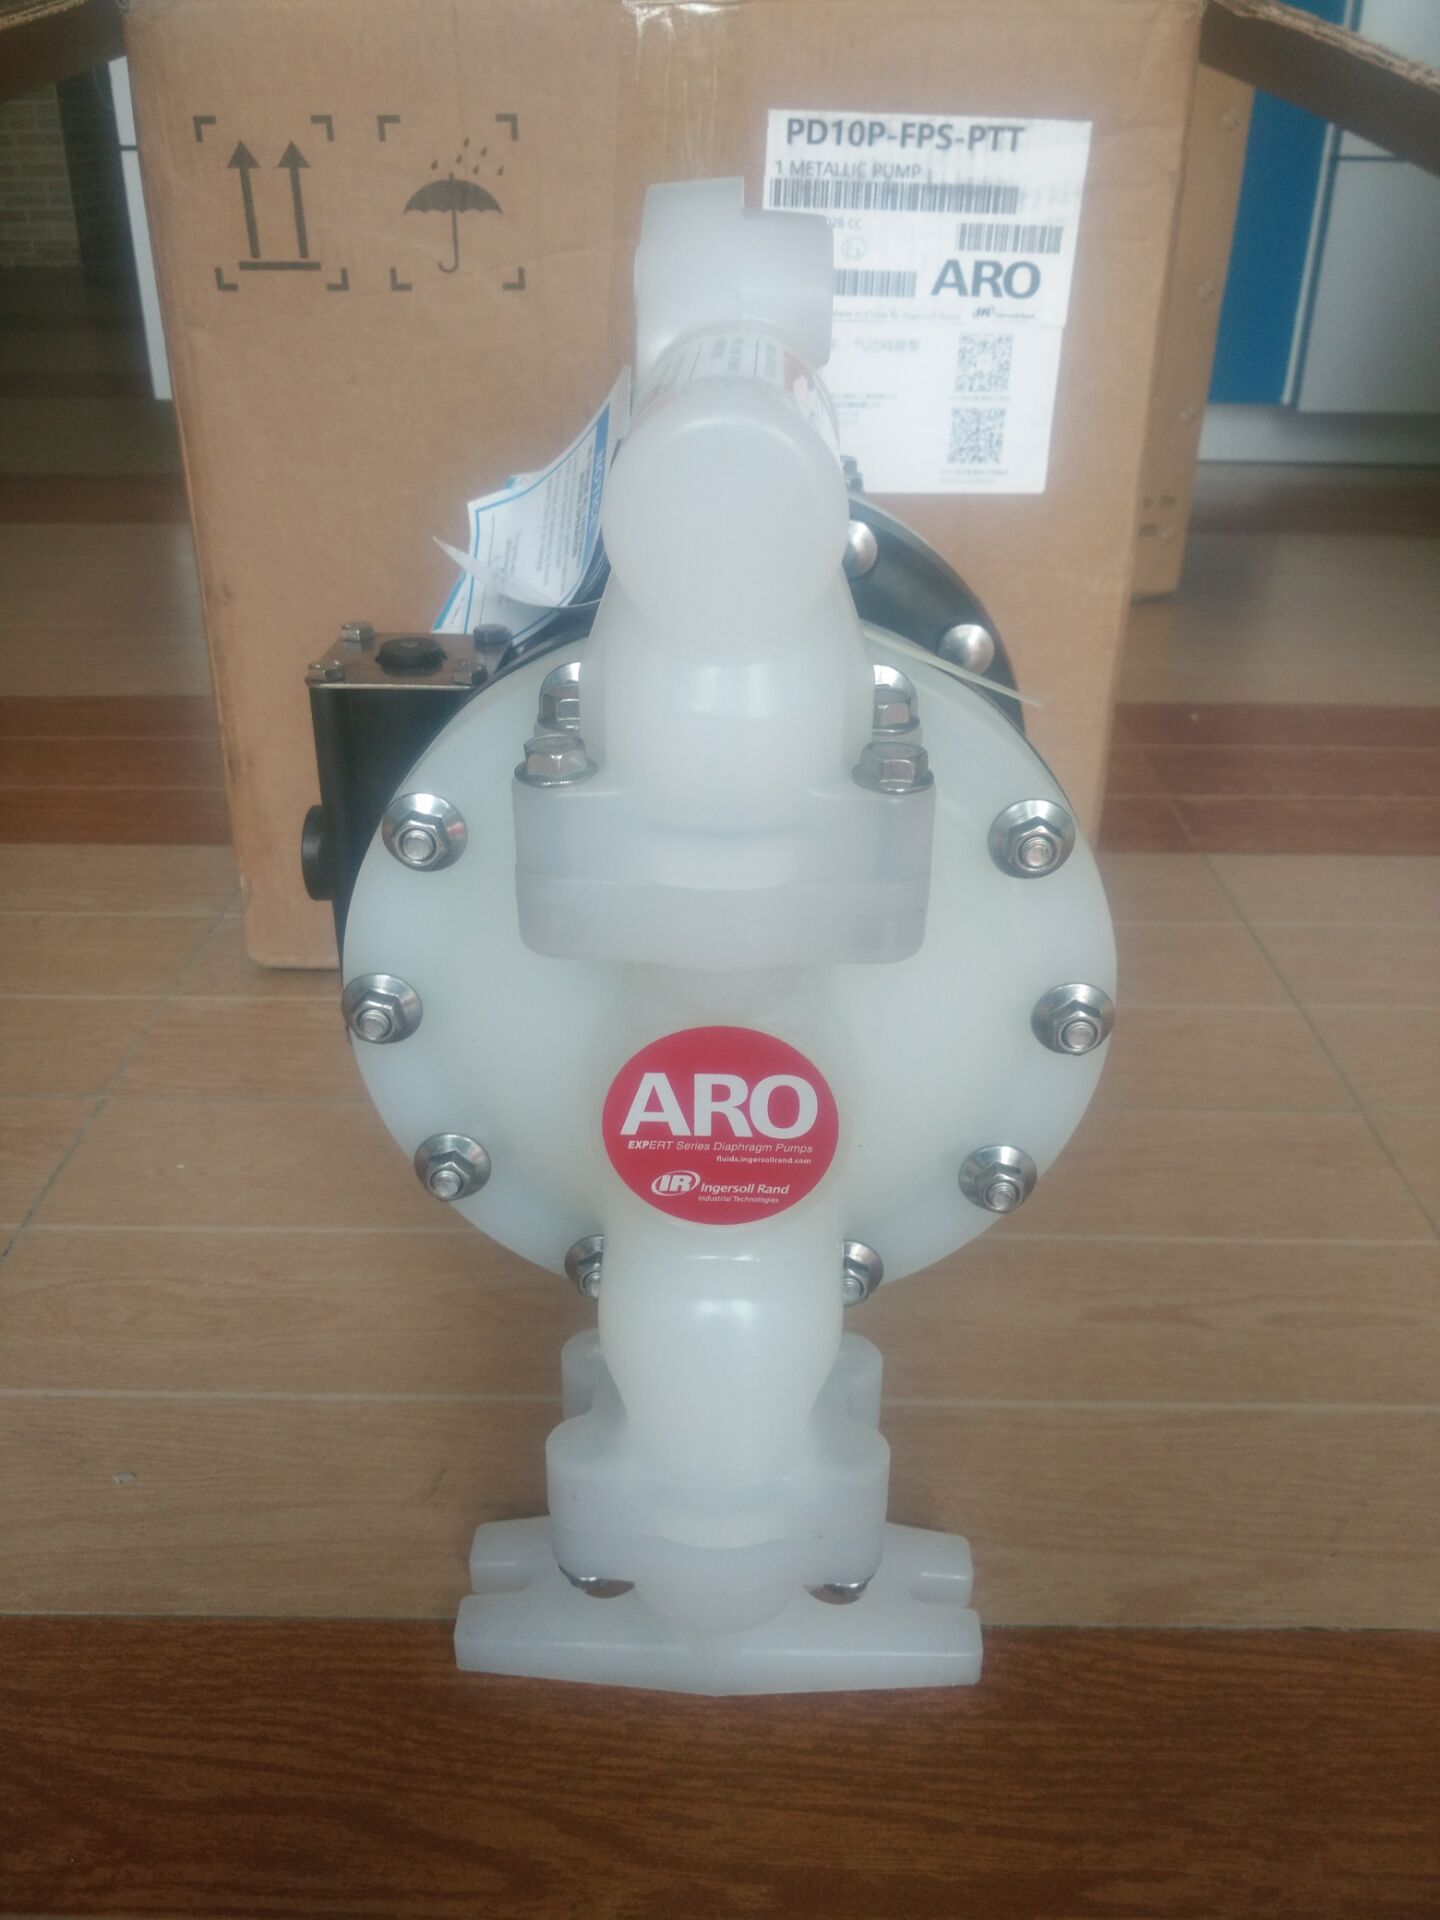 供应英格索兰隔膜泵、ARO隔膜泵、PP聚丙烯隔膜泵、进口隔膜泵、涂料泵。溶剂泵图片